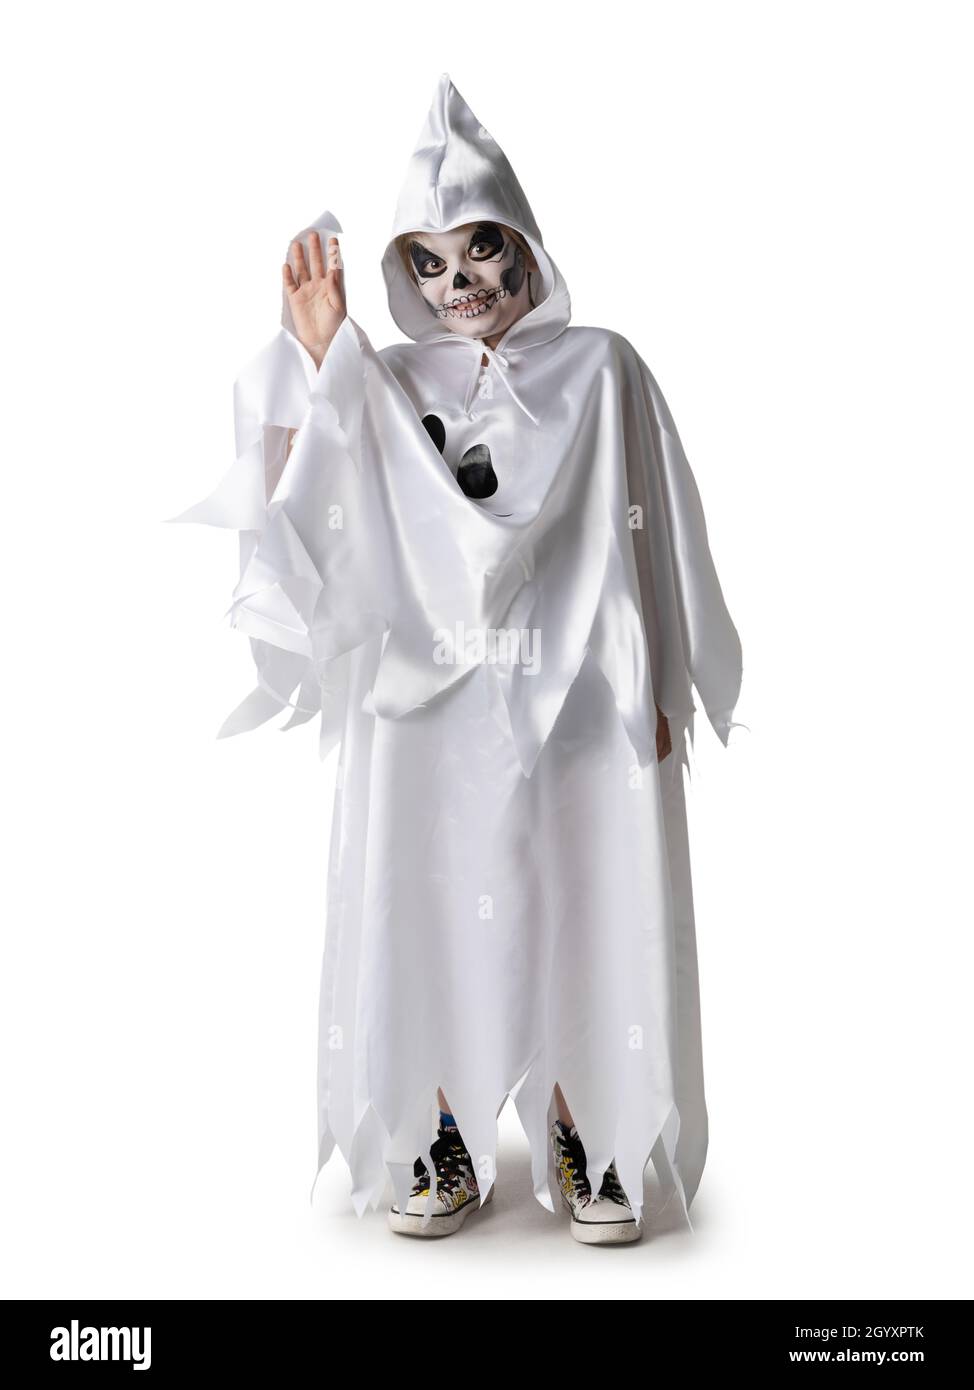 Divertente halloween bambino in costume con braccio sollevato, hello ondeggiante, scheletro, zombie, fantasma, procedura guidata isolata su sfondo bianco Foto Stock